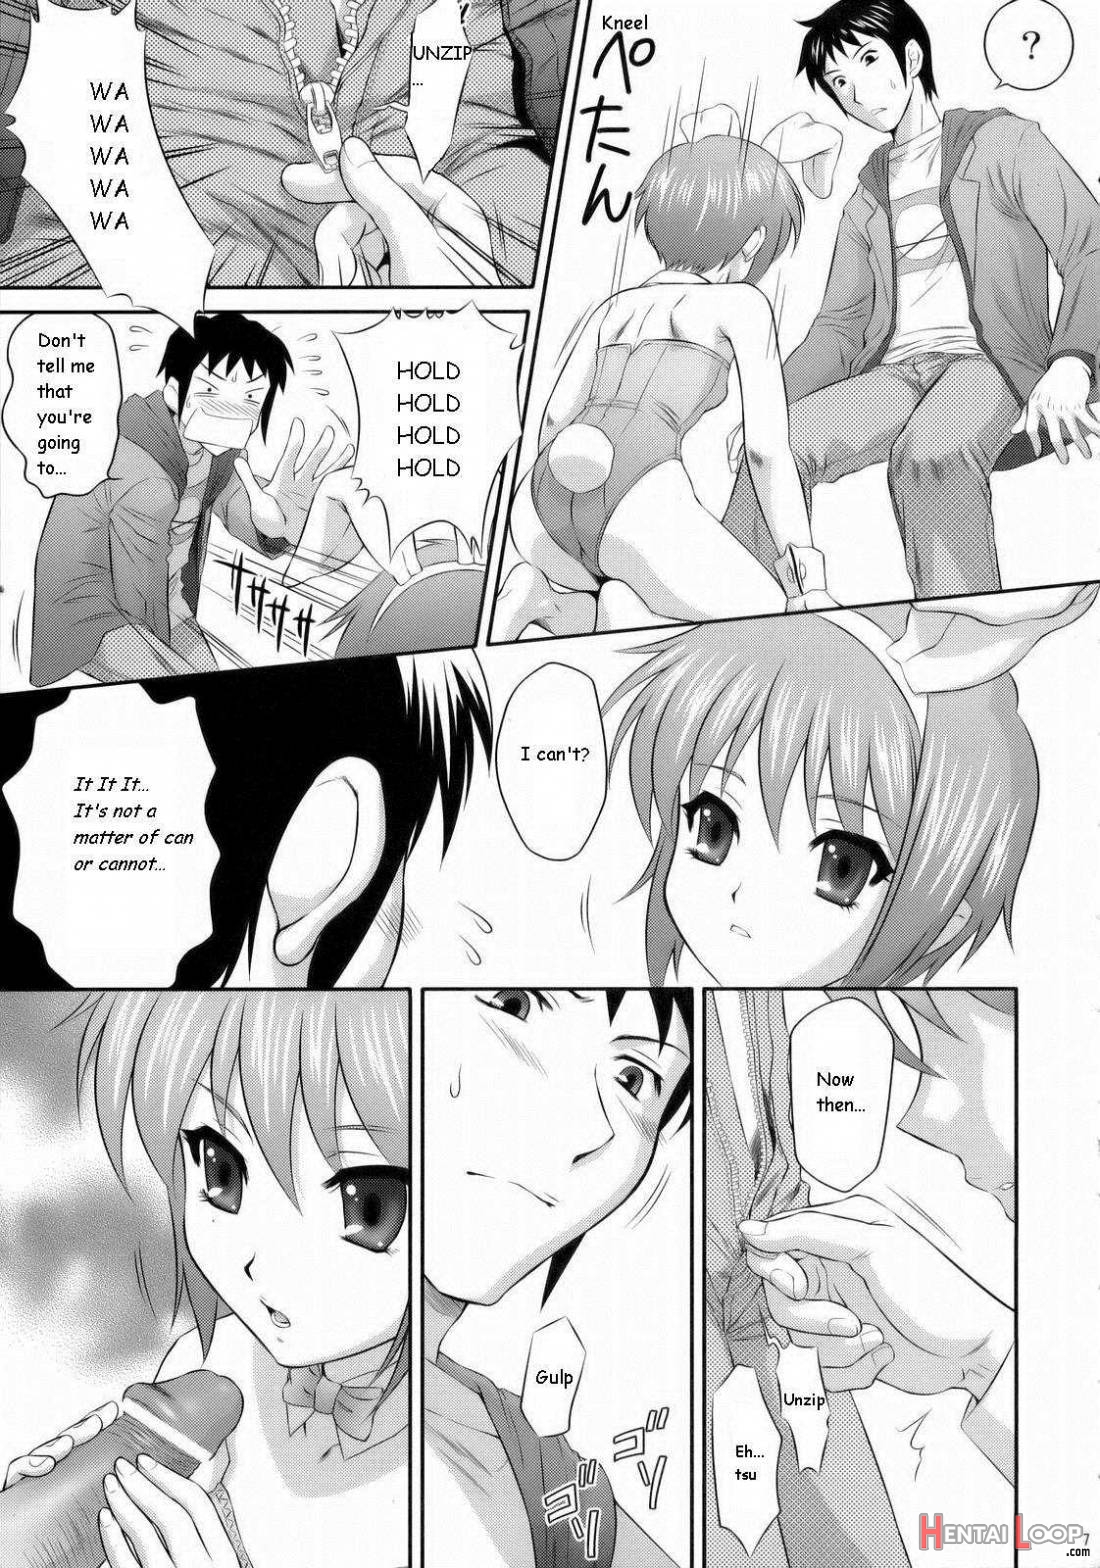 Nagato yuki wa usagi to kame no yume wo miru ka? page 4